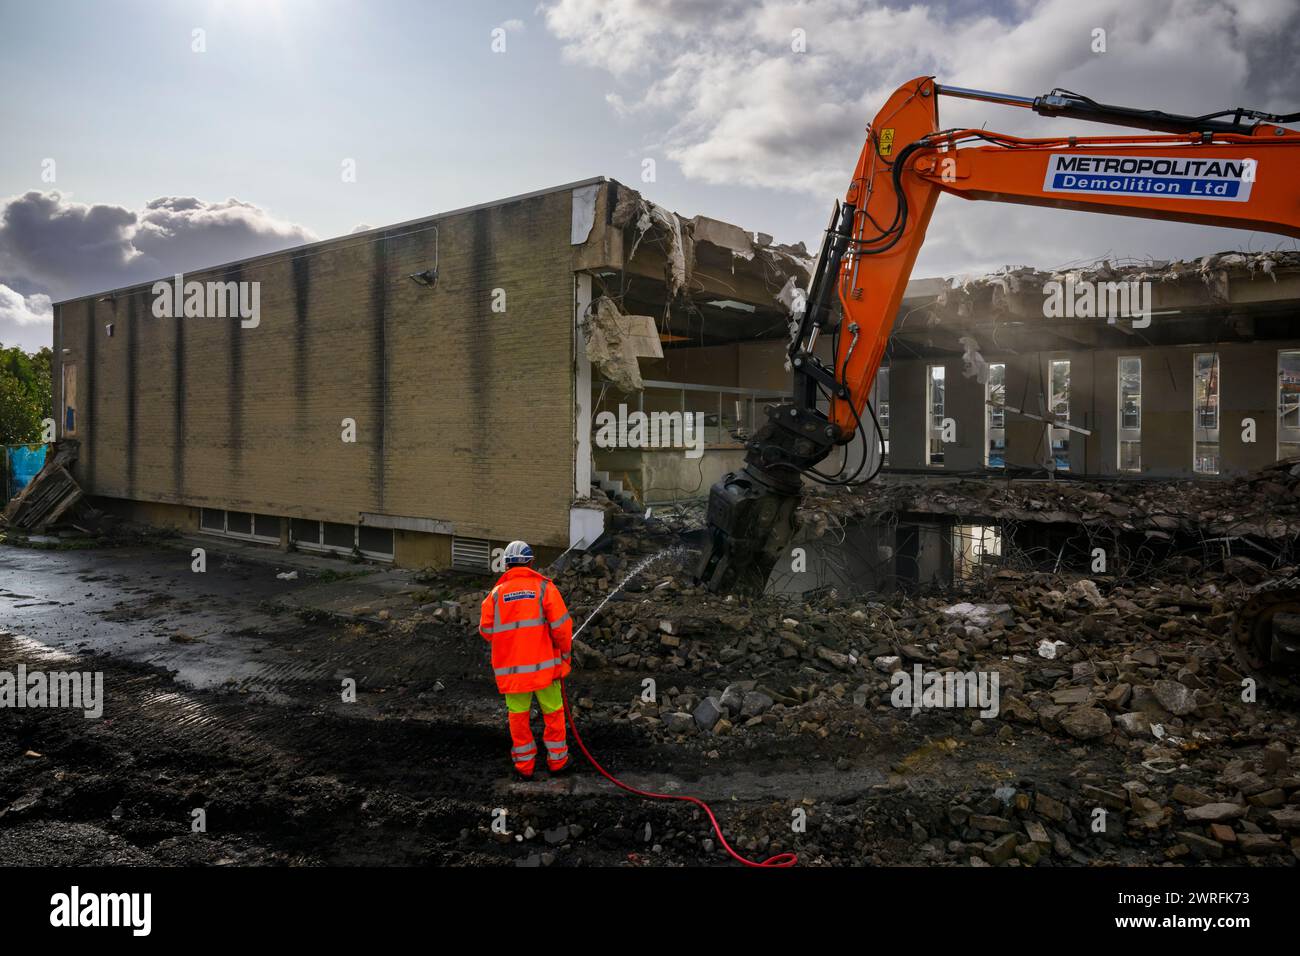 Abbruchstelle (Mann in gut sichtbarem Arbeitsschutt, Baurückbau, kontrollierter Zusammenbruch, leere Hülle) - Baildon, West Yorkshire England Großbritannien. Stockfoto